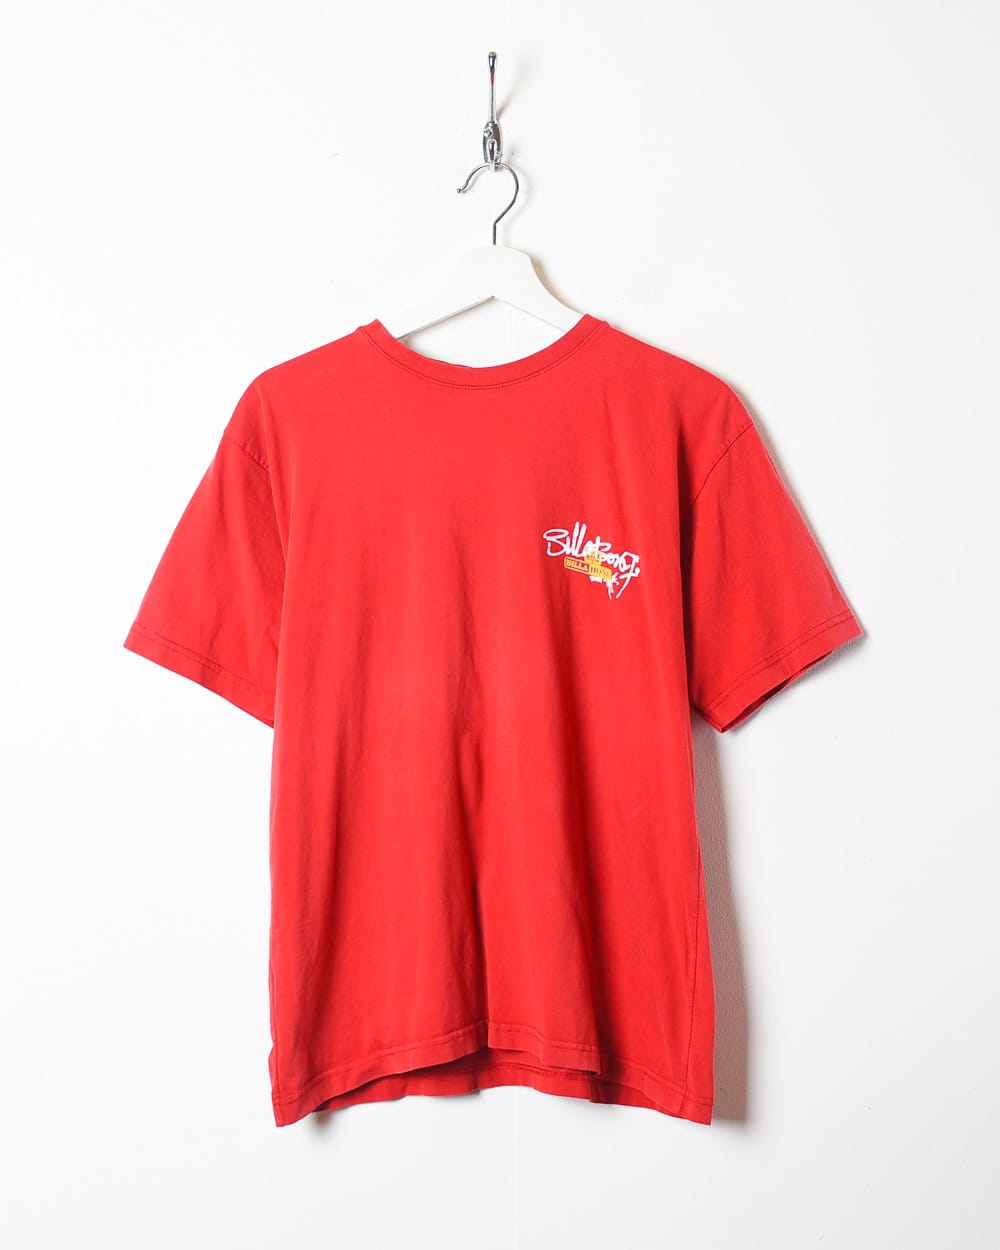 Red Billabong T-Shirt - Small